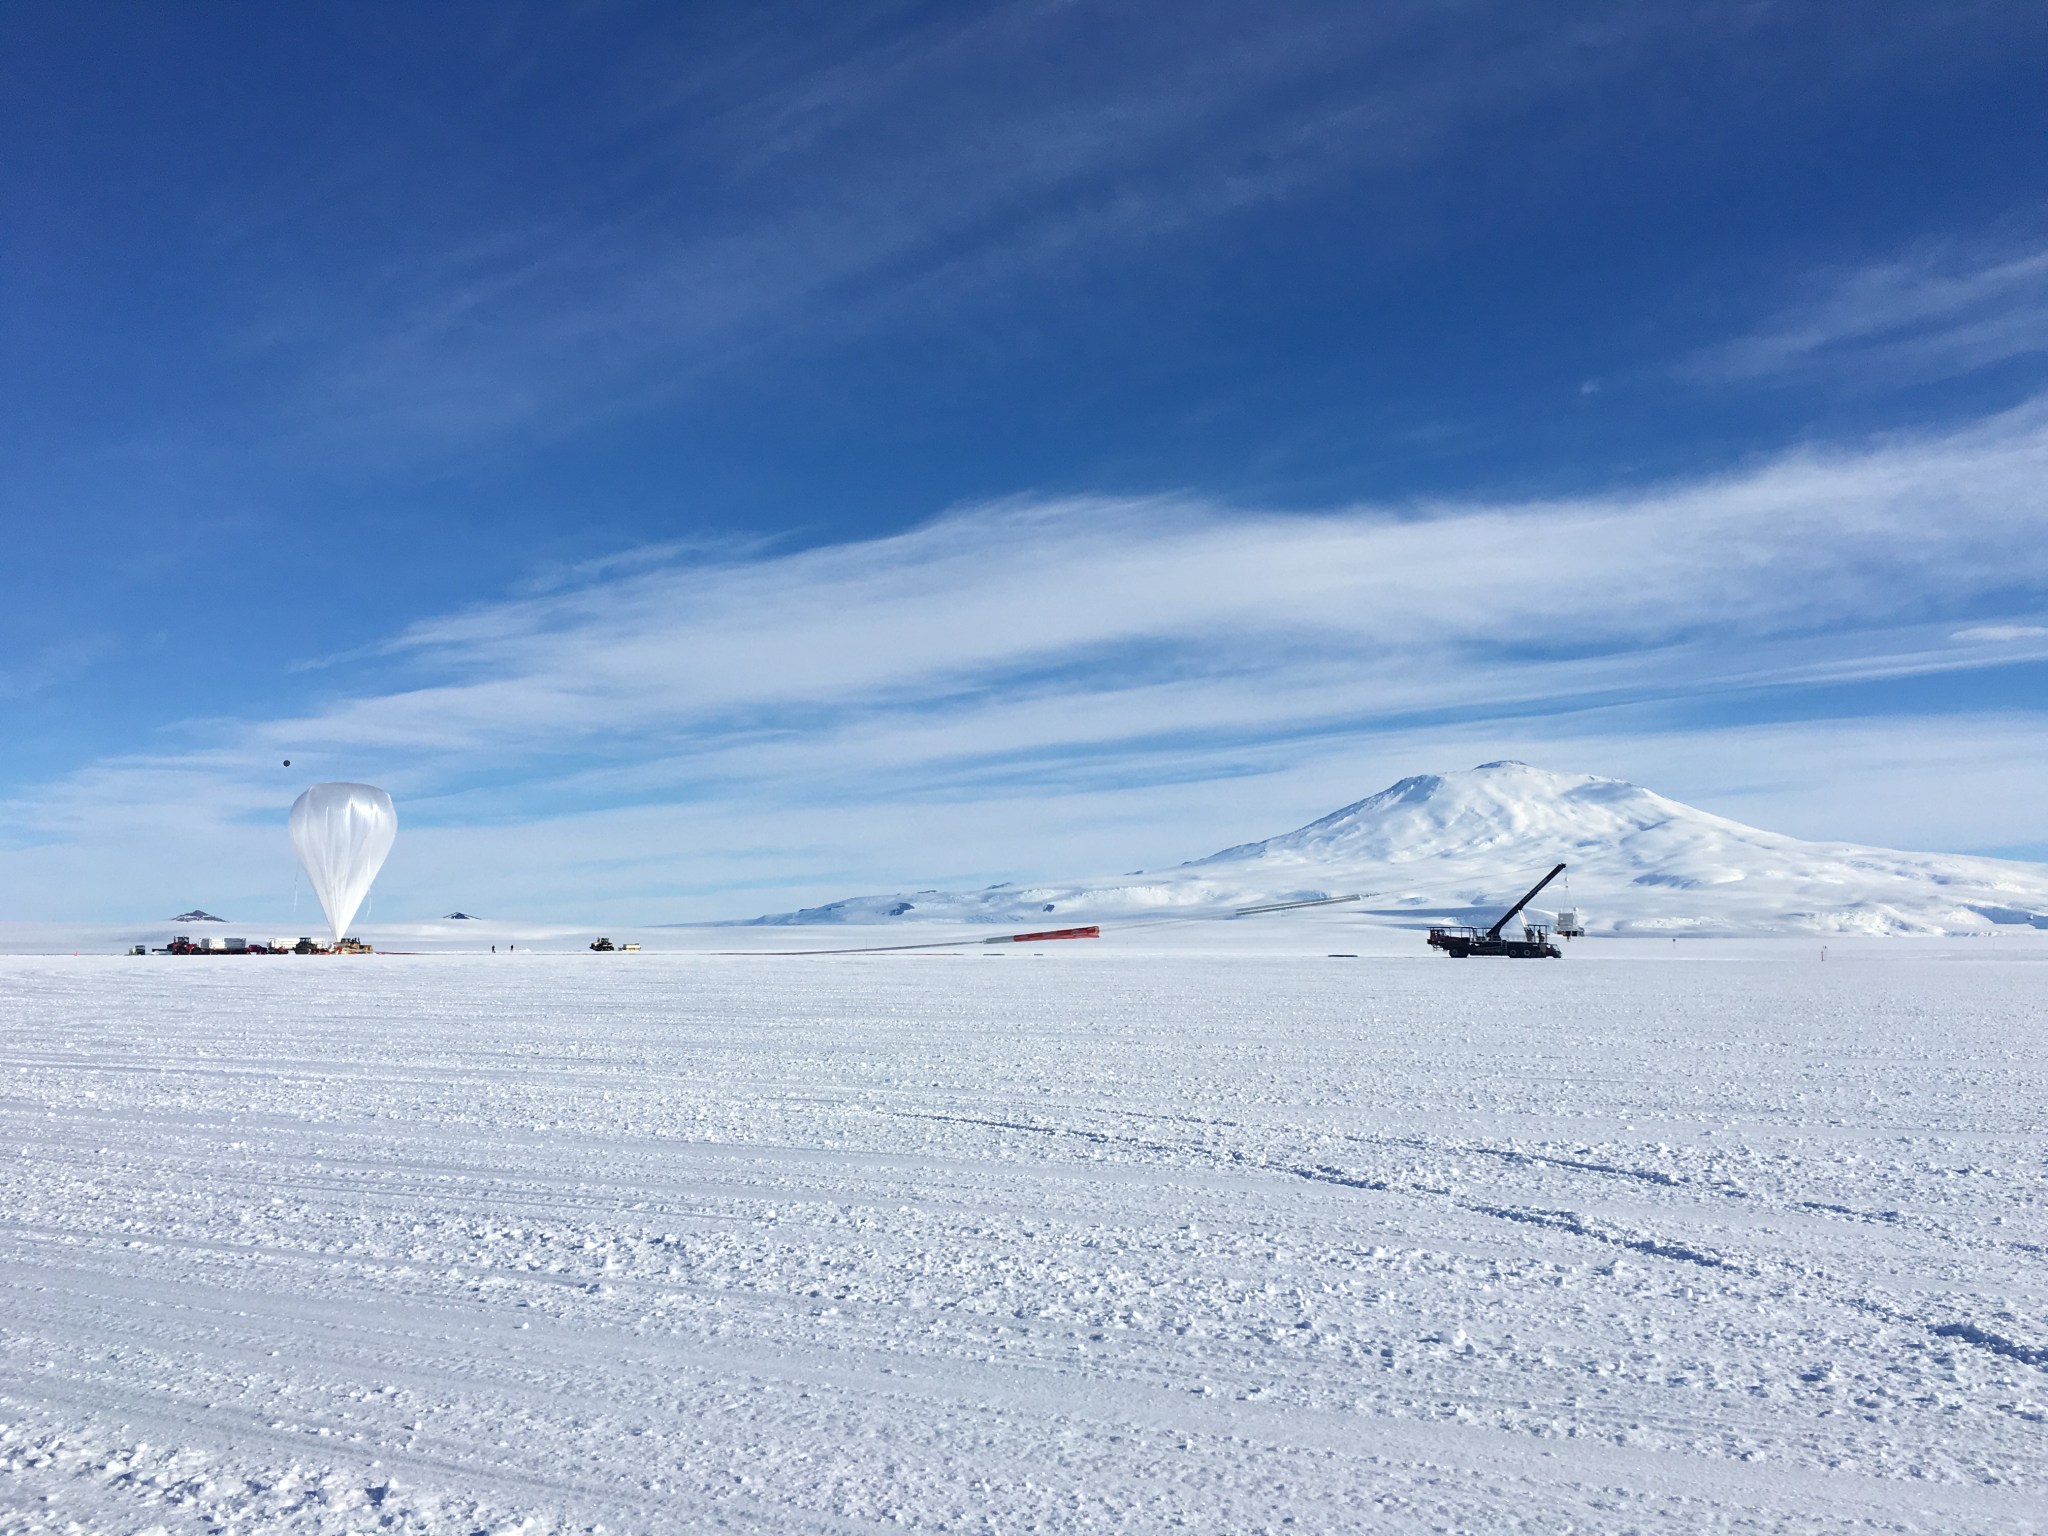 A scientific balloon being prepared for flight in Antartica.